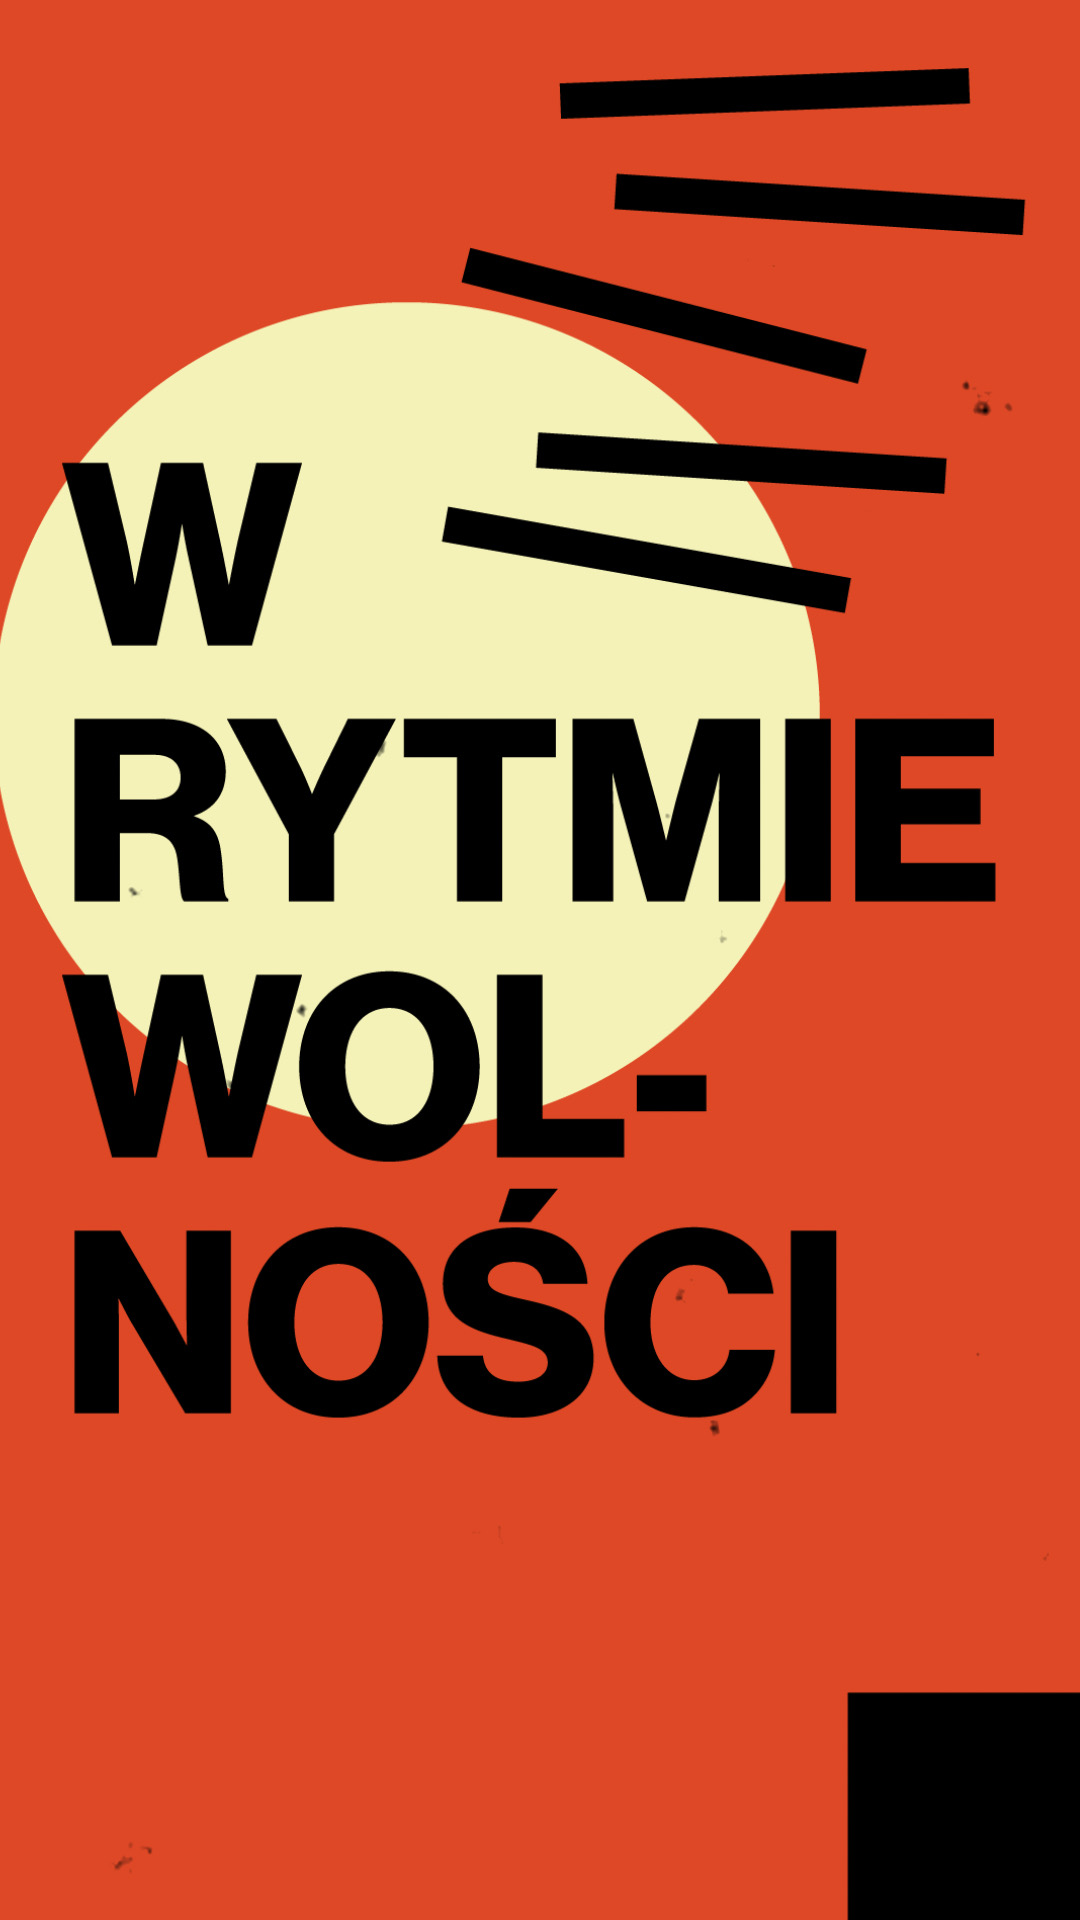 Смотреть W rytmie wolnosci (2020) на шдрезка